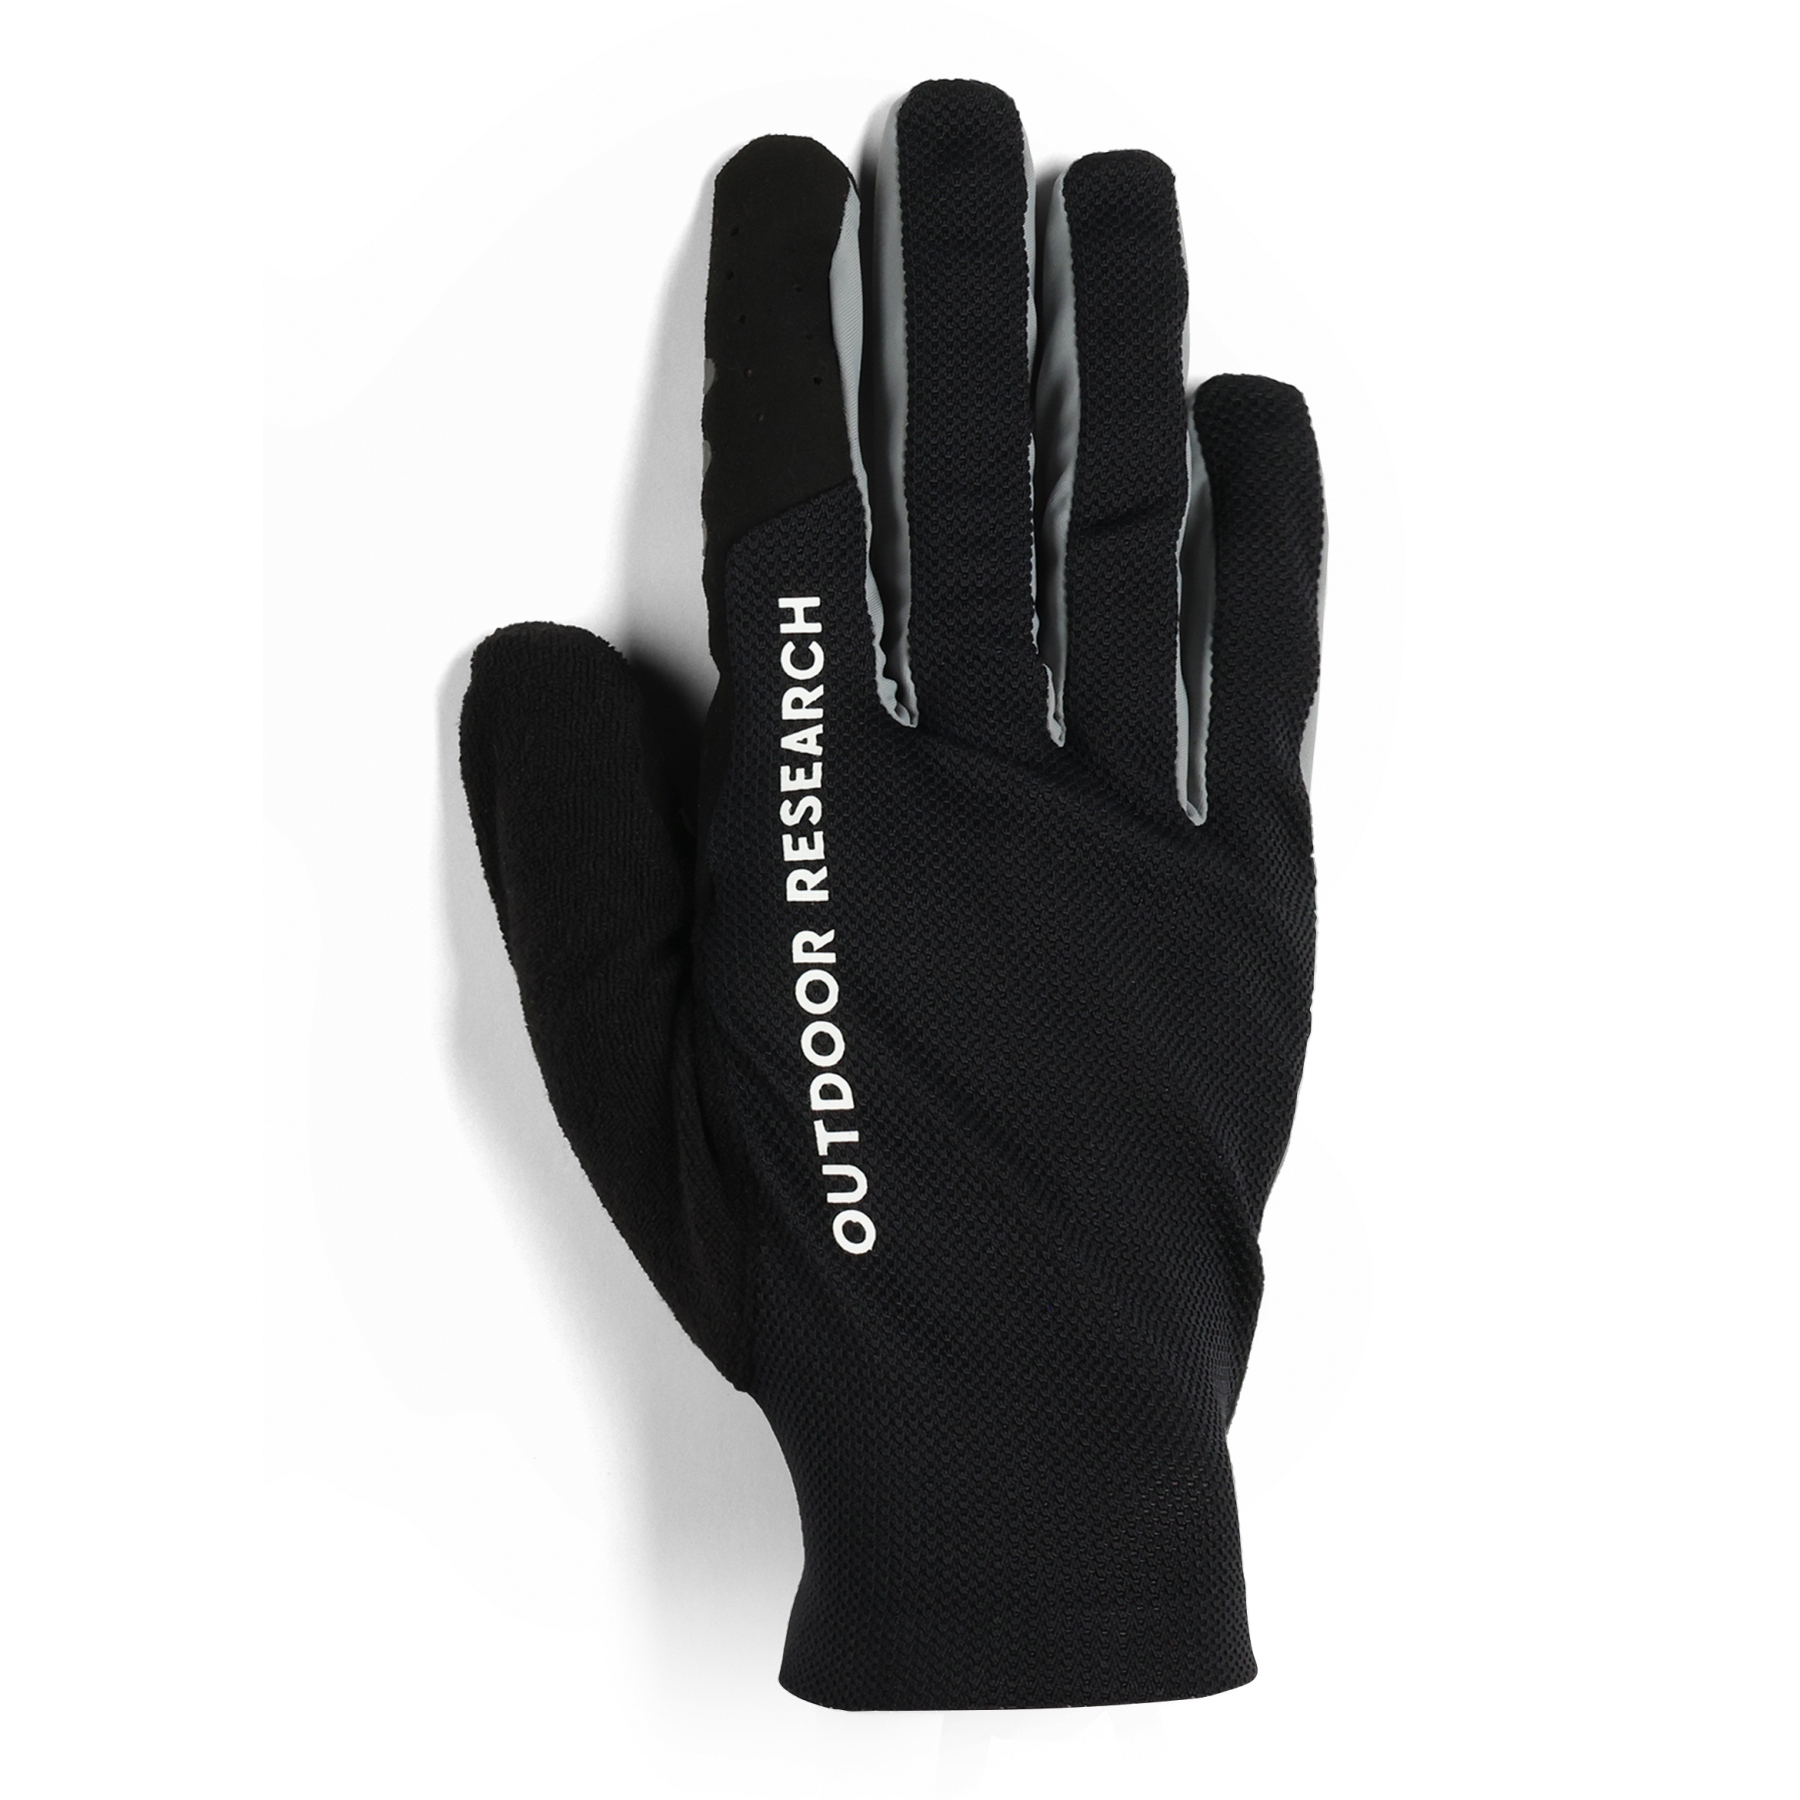 Productfoto van Outdoor Research Freewheel Fietshandschoenen - zwart